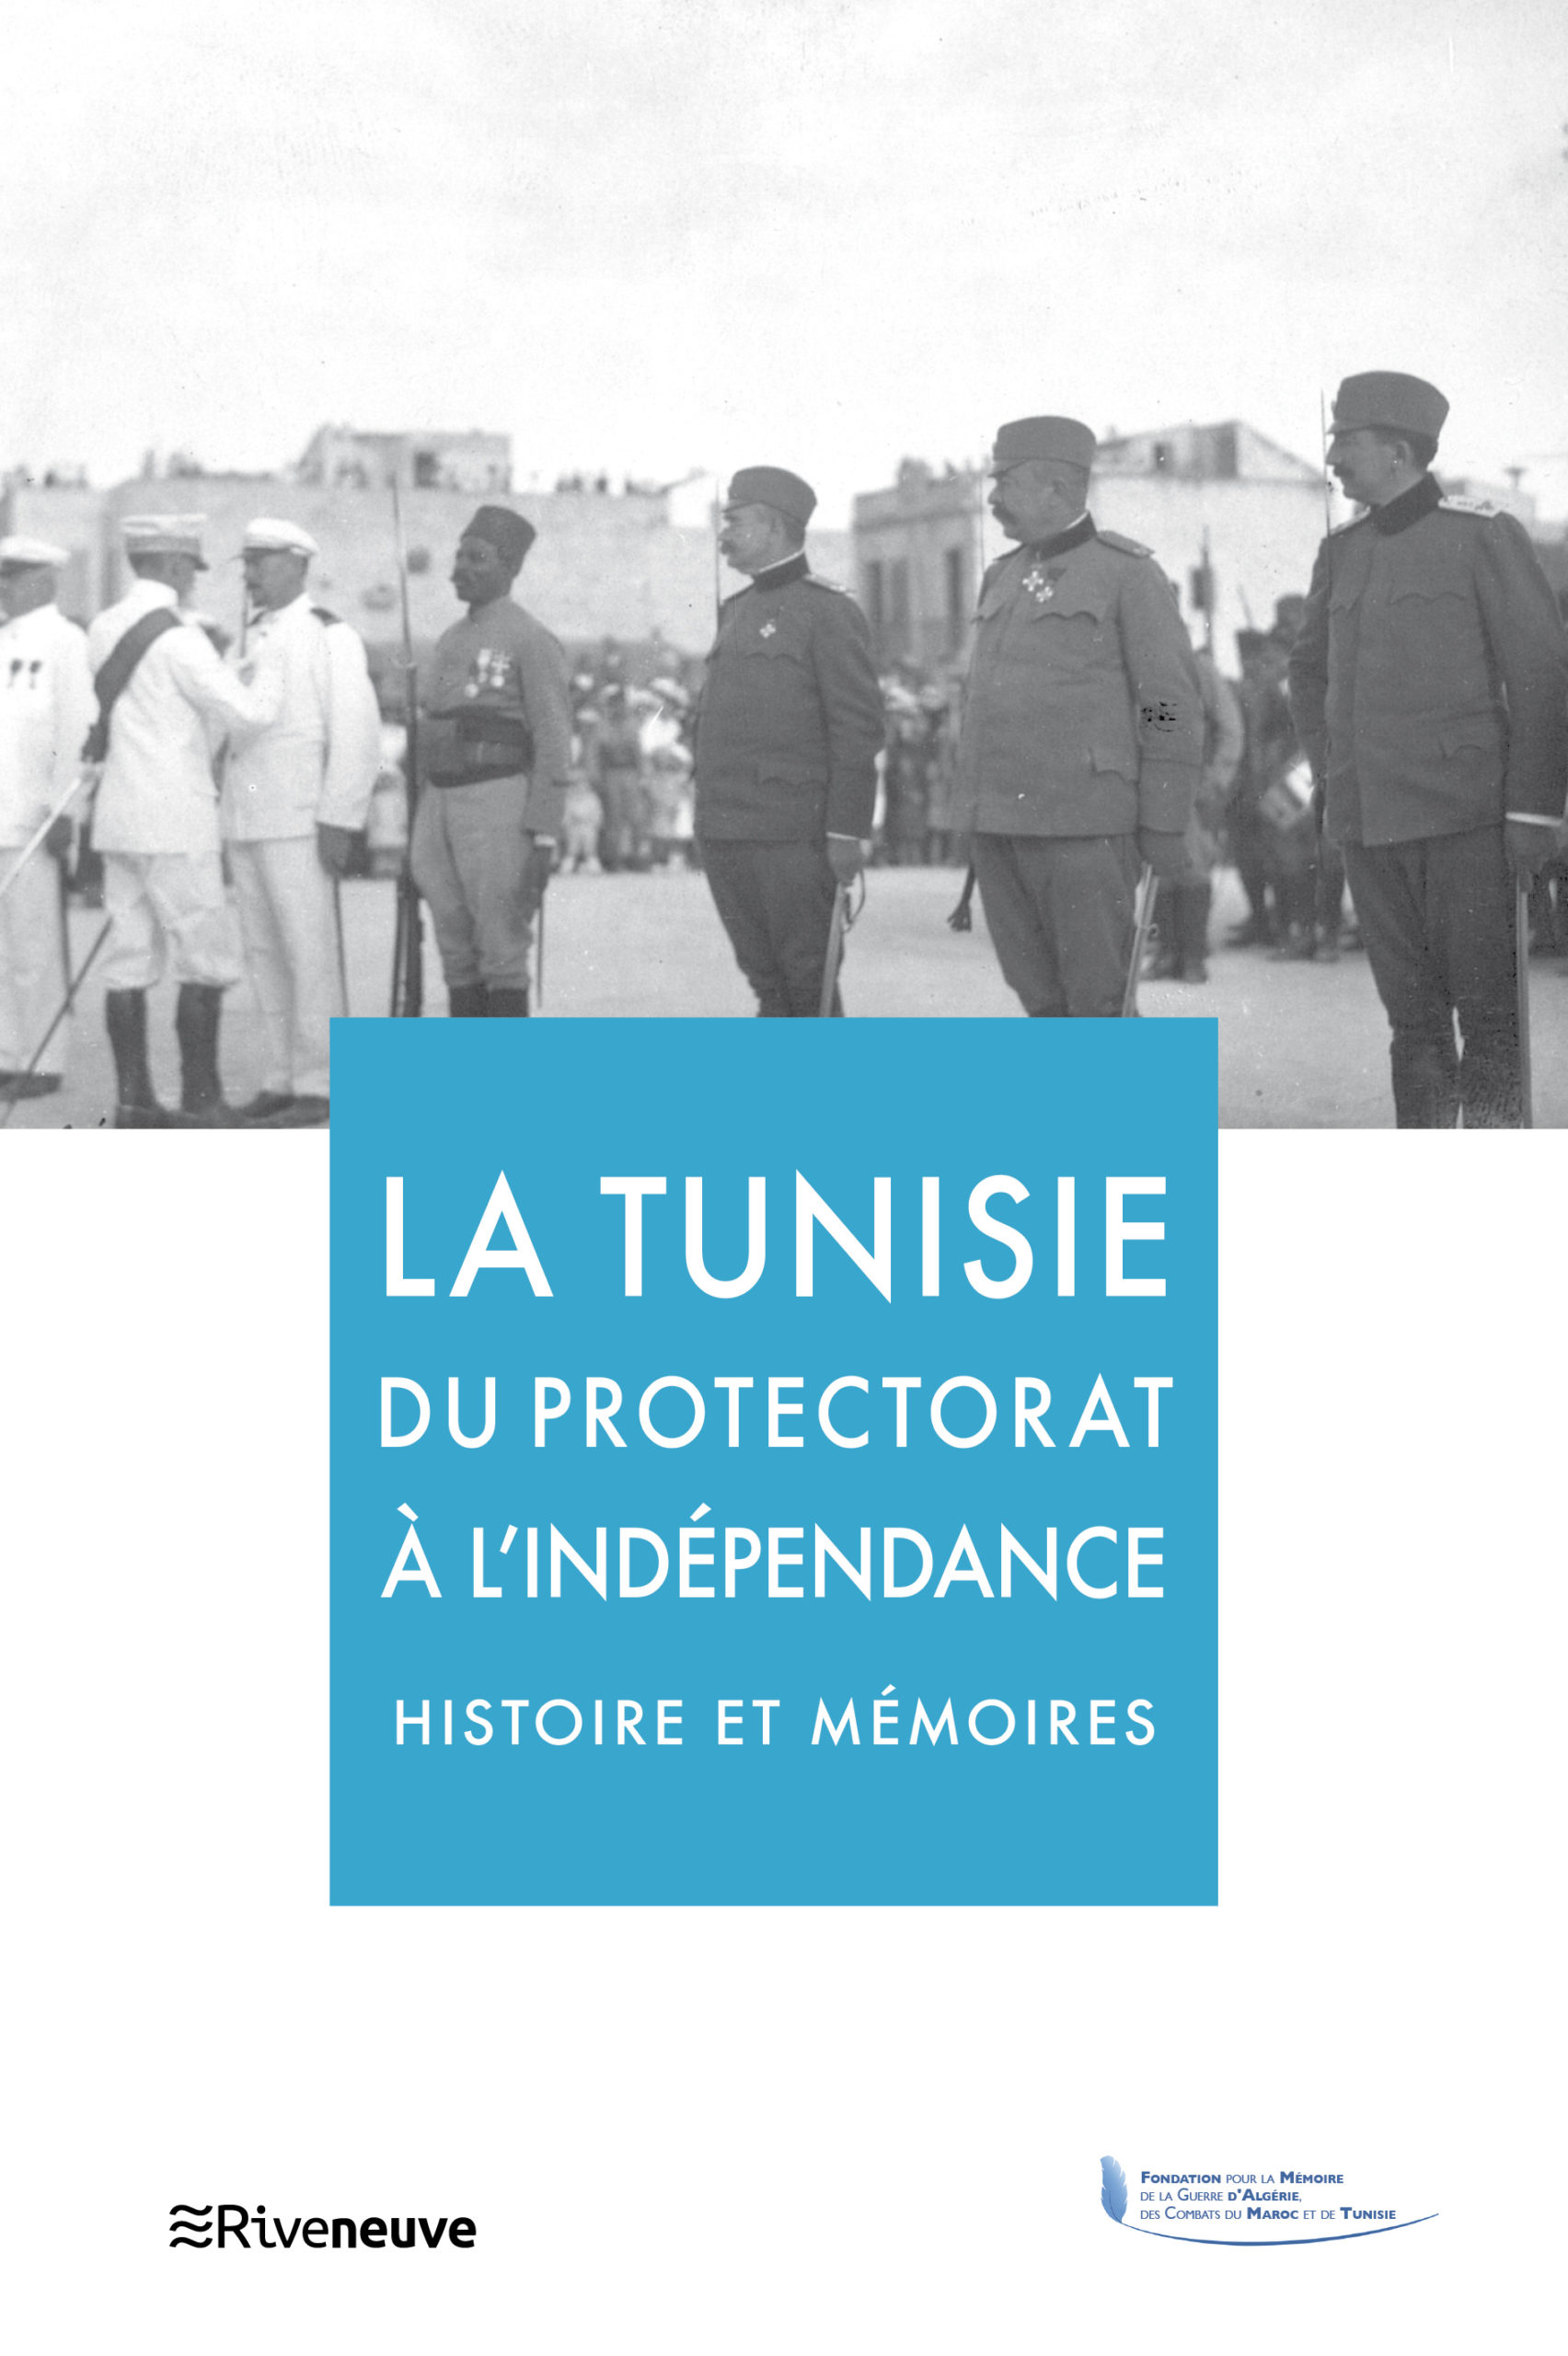 La Tunisie du protectorat à l’indépendance, histoire et mémoires